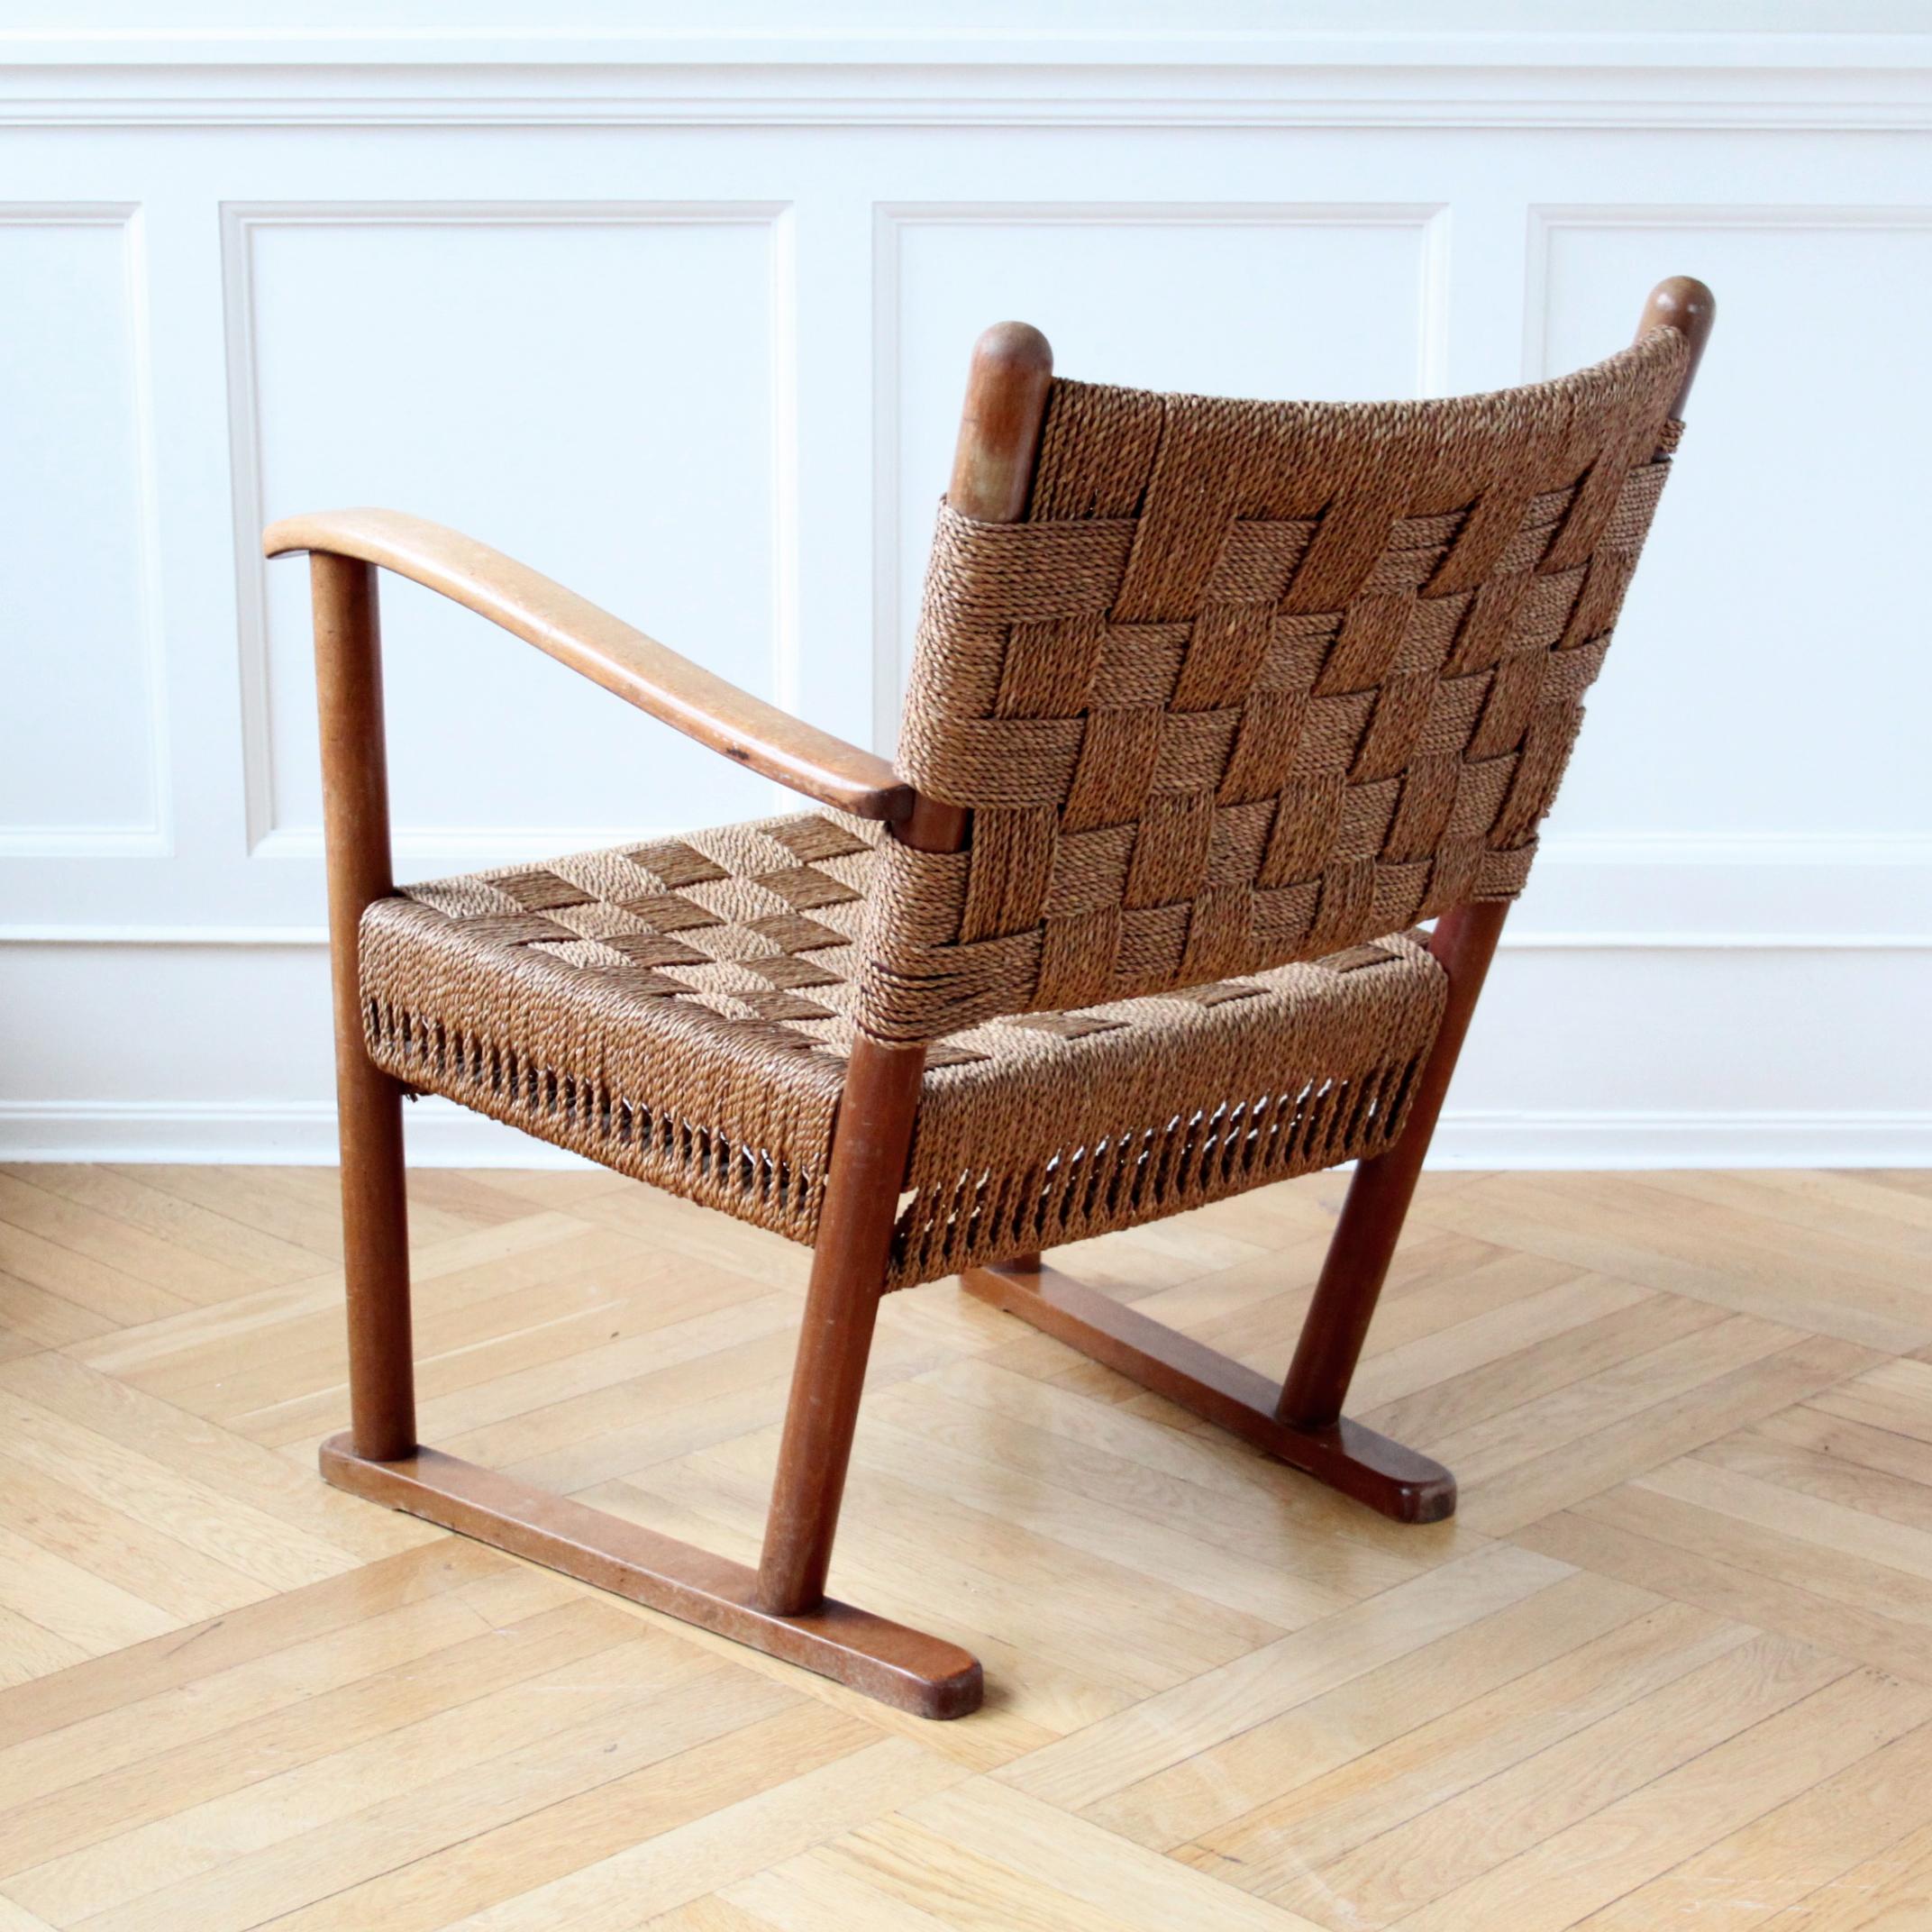 seagrass chair